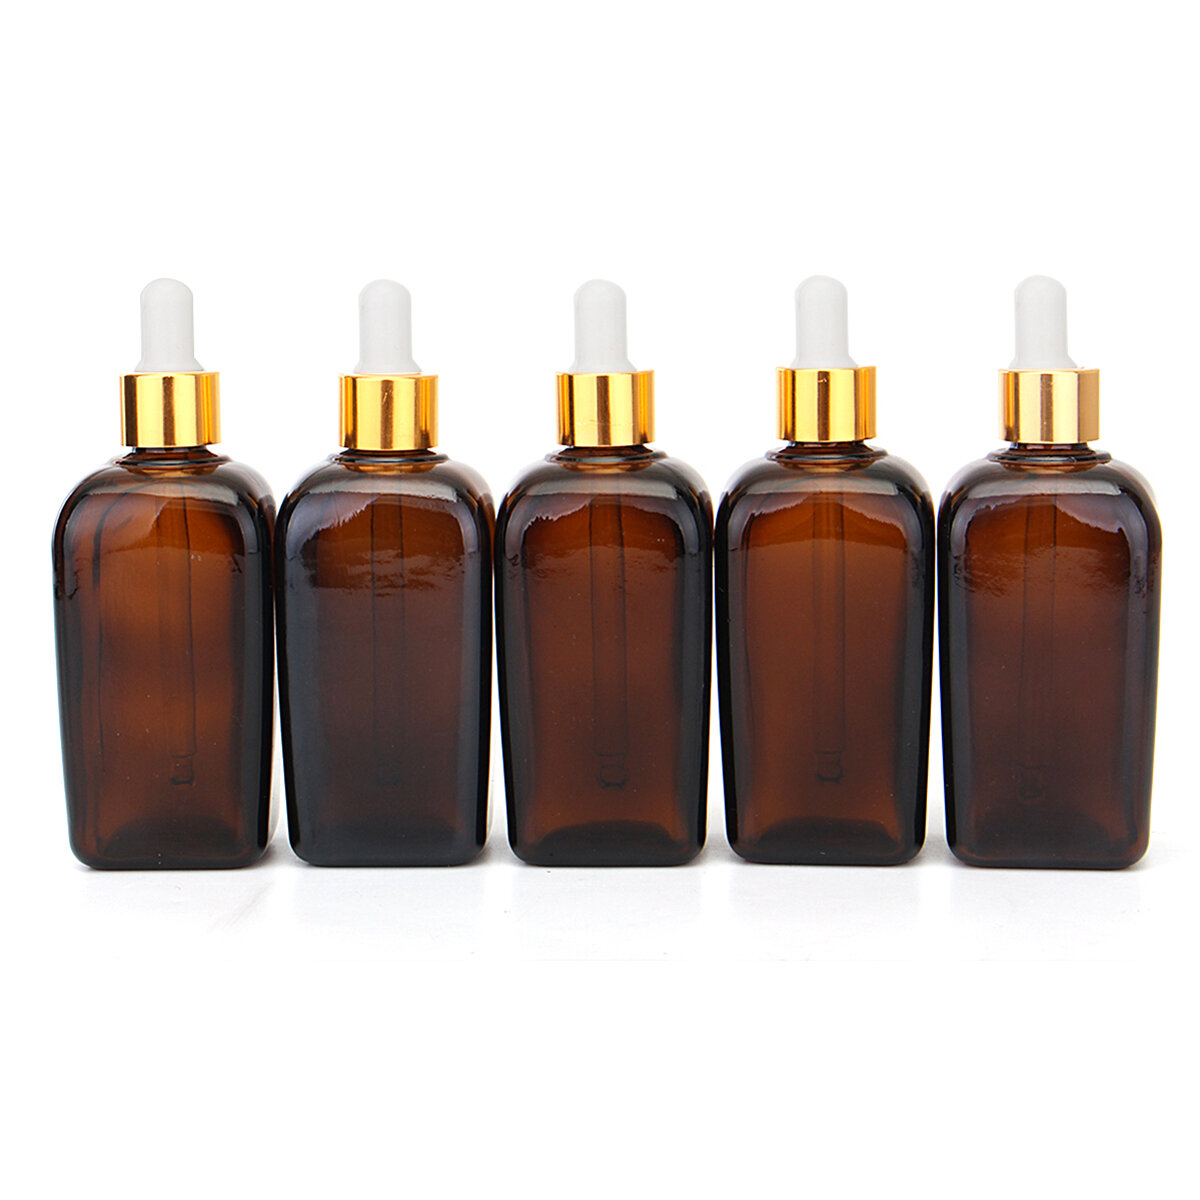 5 stks amber glas vloeibare pipet parfumflesjes essenti?le olie toner fles herbruikbare fles